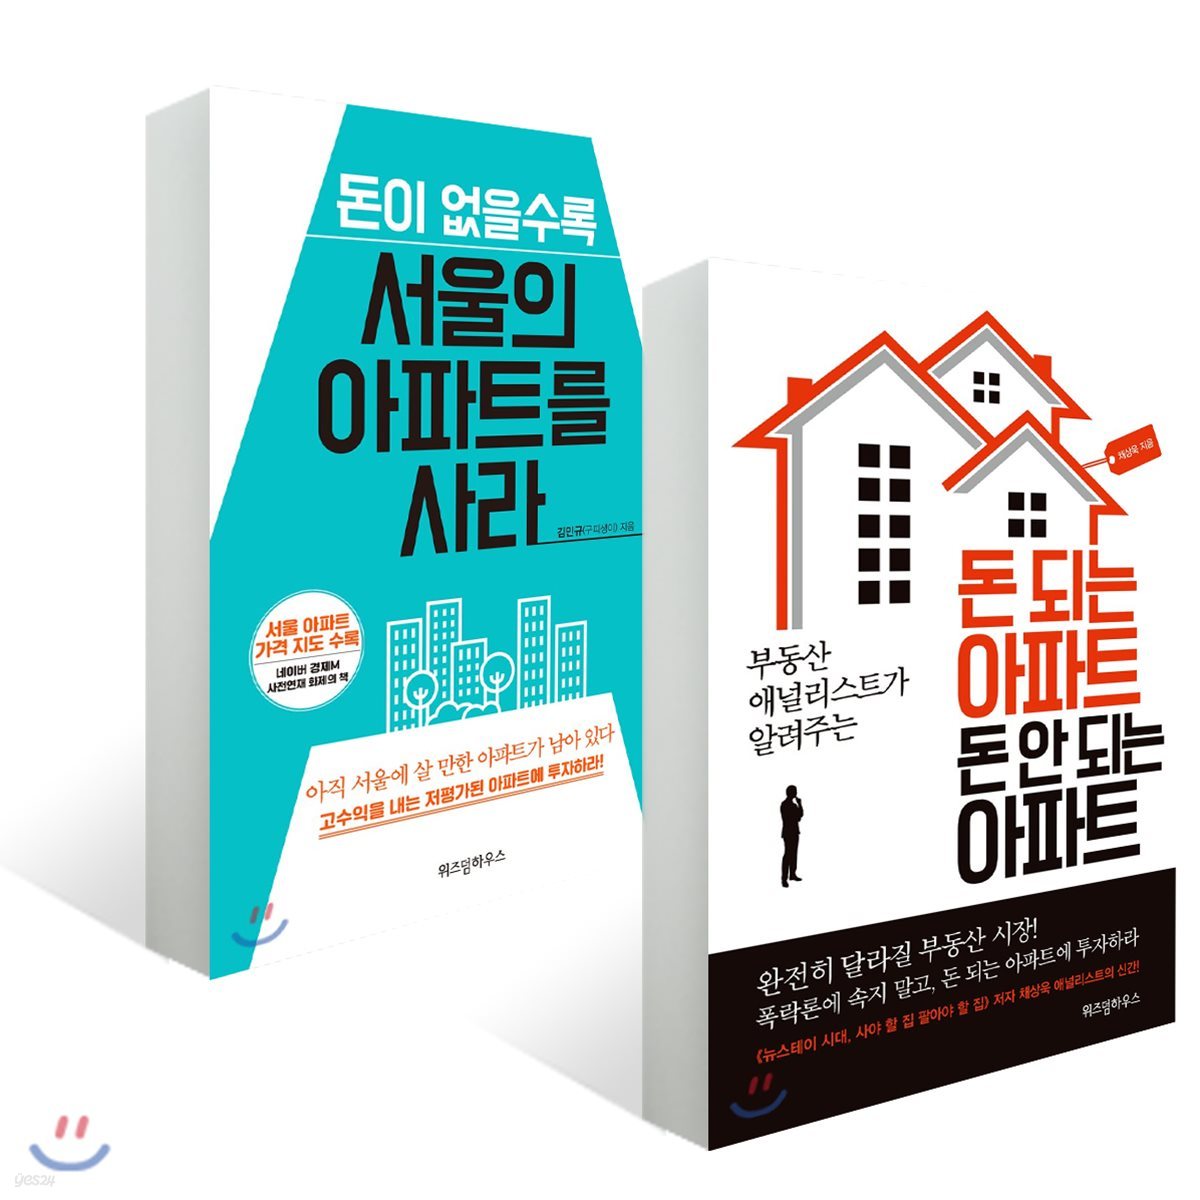 돈이 없을수록 서울의 아파트를 사라 + 돈 되는 아파트 돈 안 되는 아파트